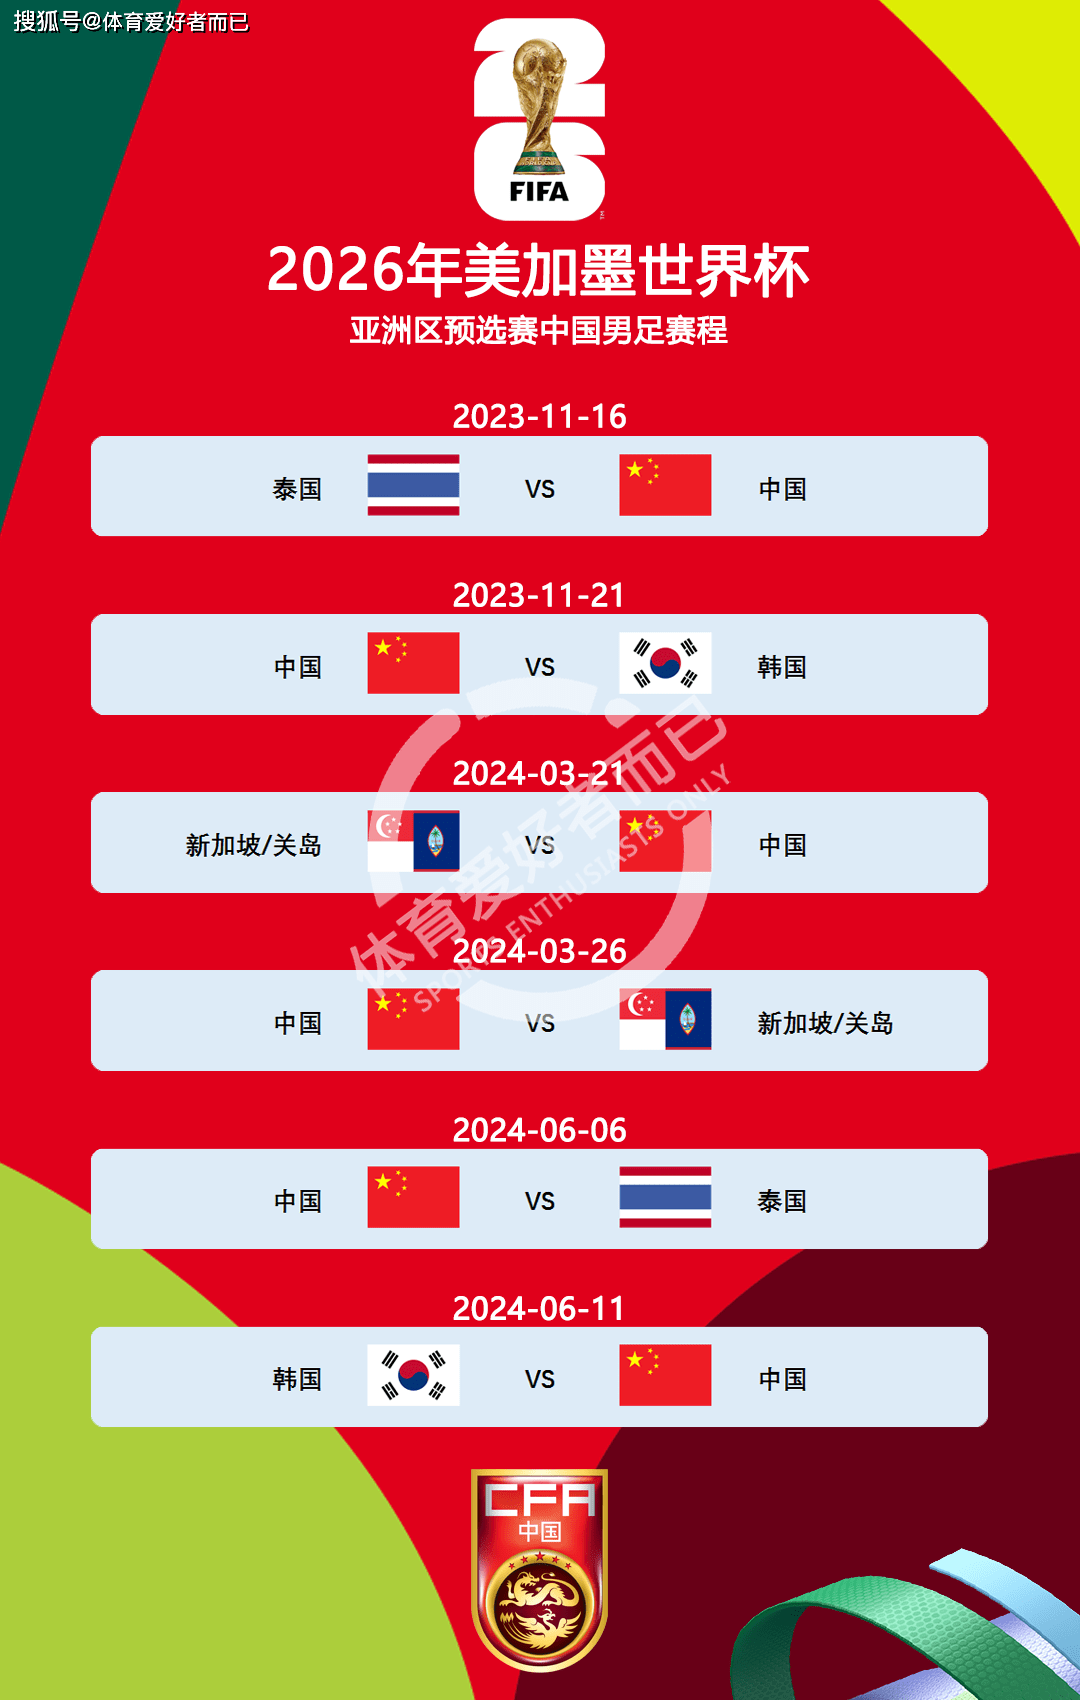 2026年美加墨世界杯亚洲区预选赛,国足,韩国,泰国一组